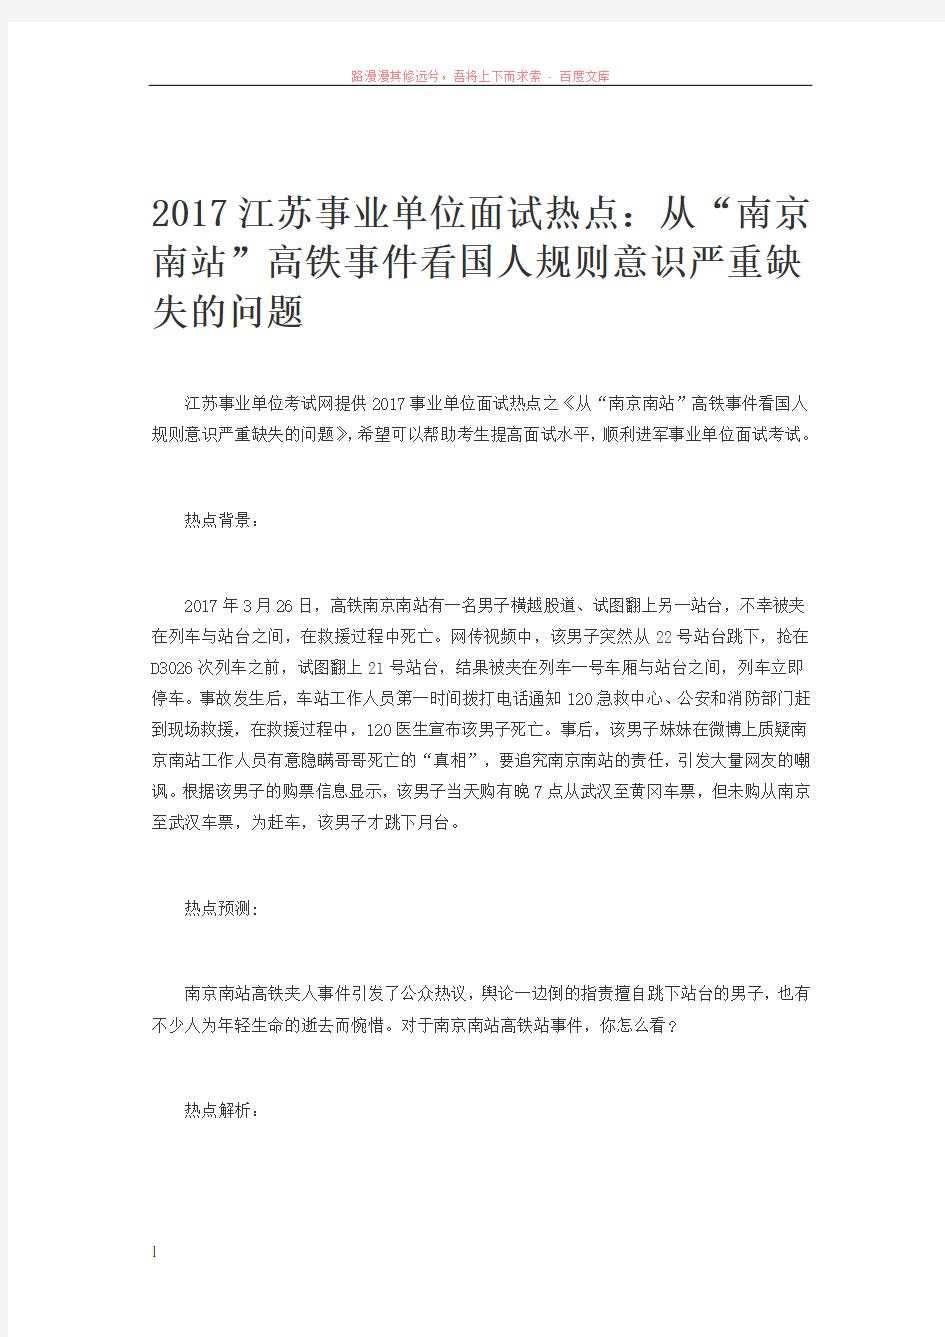 2017江苏事业单位面试热点从“南京南站”高铁事件看国人规则意识严重缺失的问题